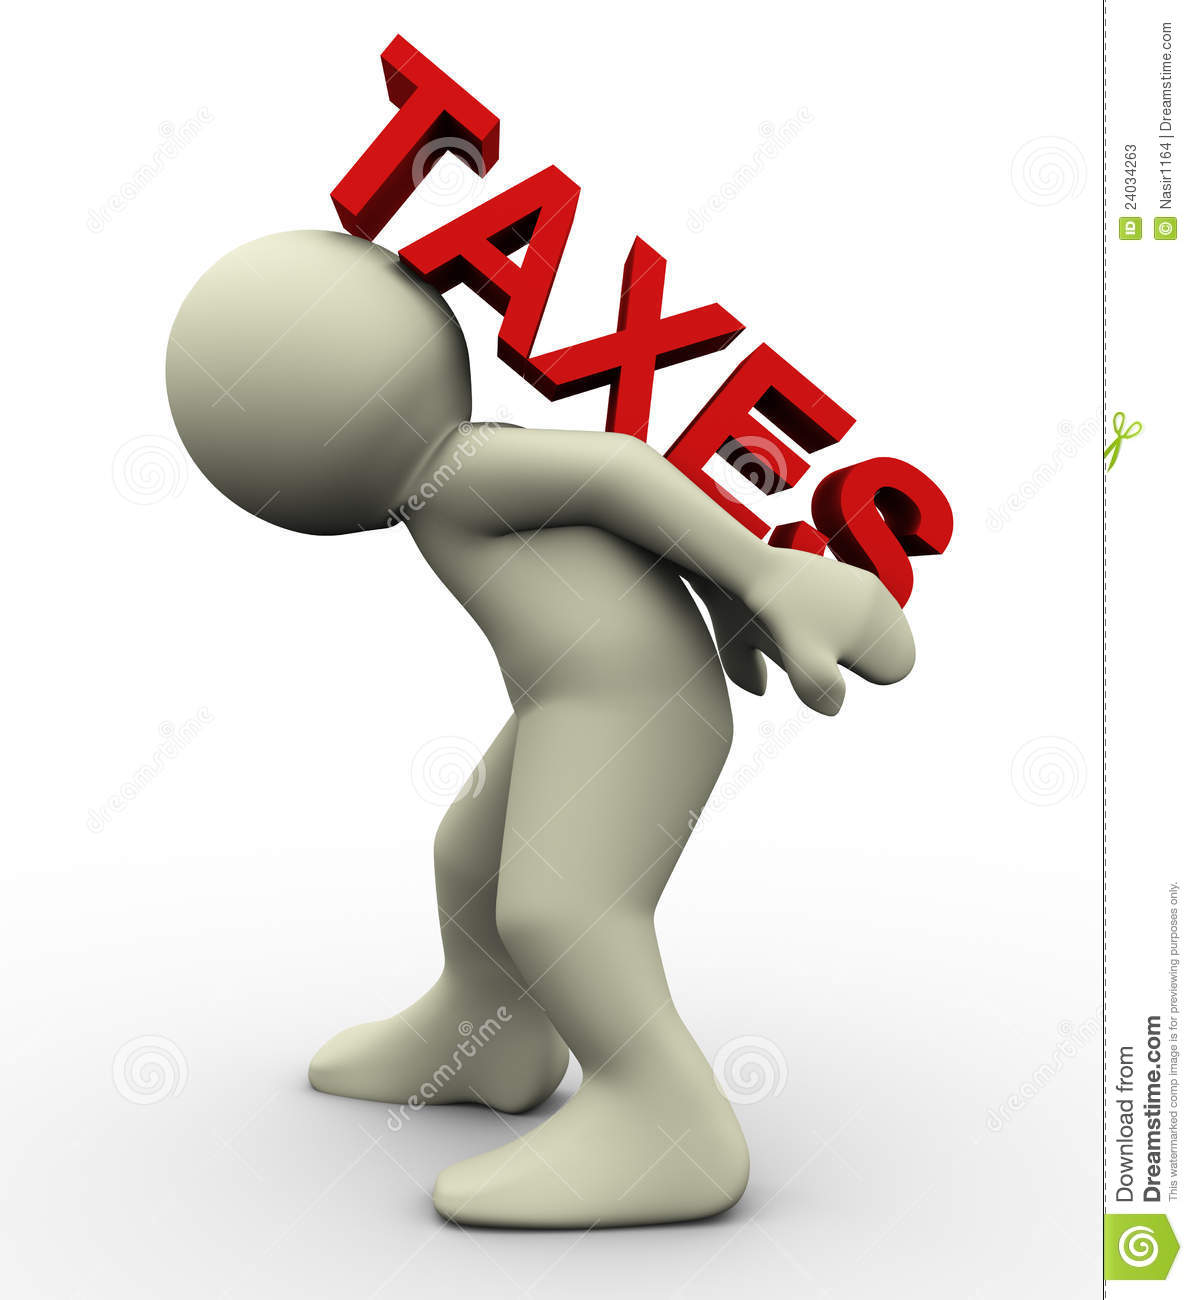 impuestos-que-llevan-del-hombre-3d-24034263.jpg